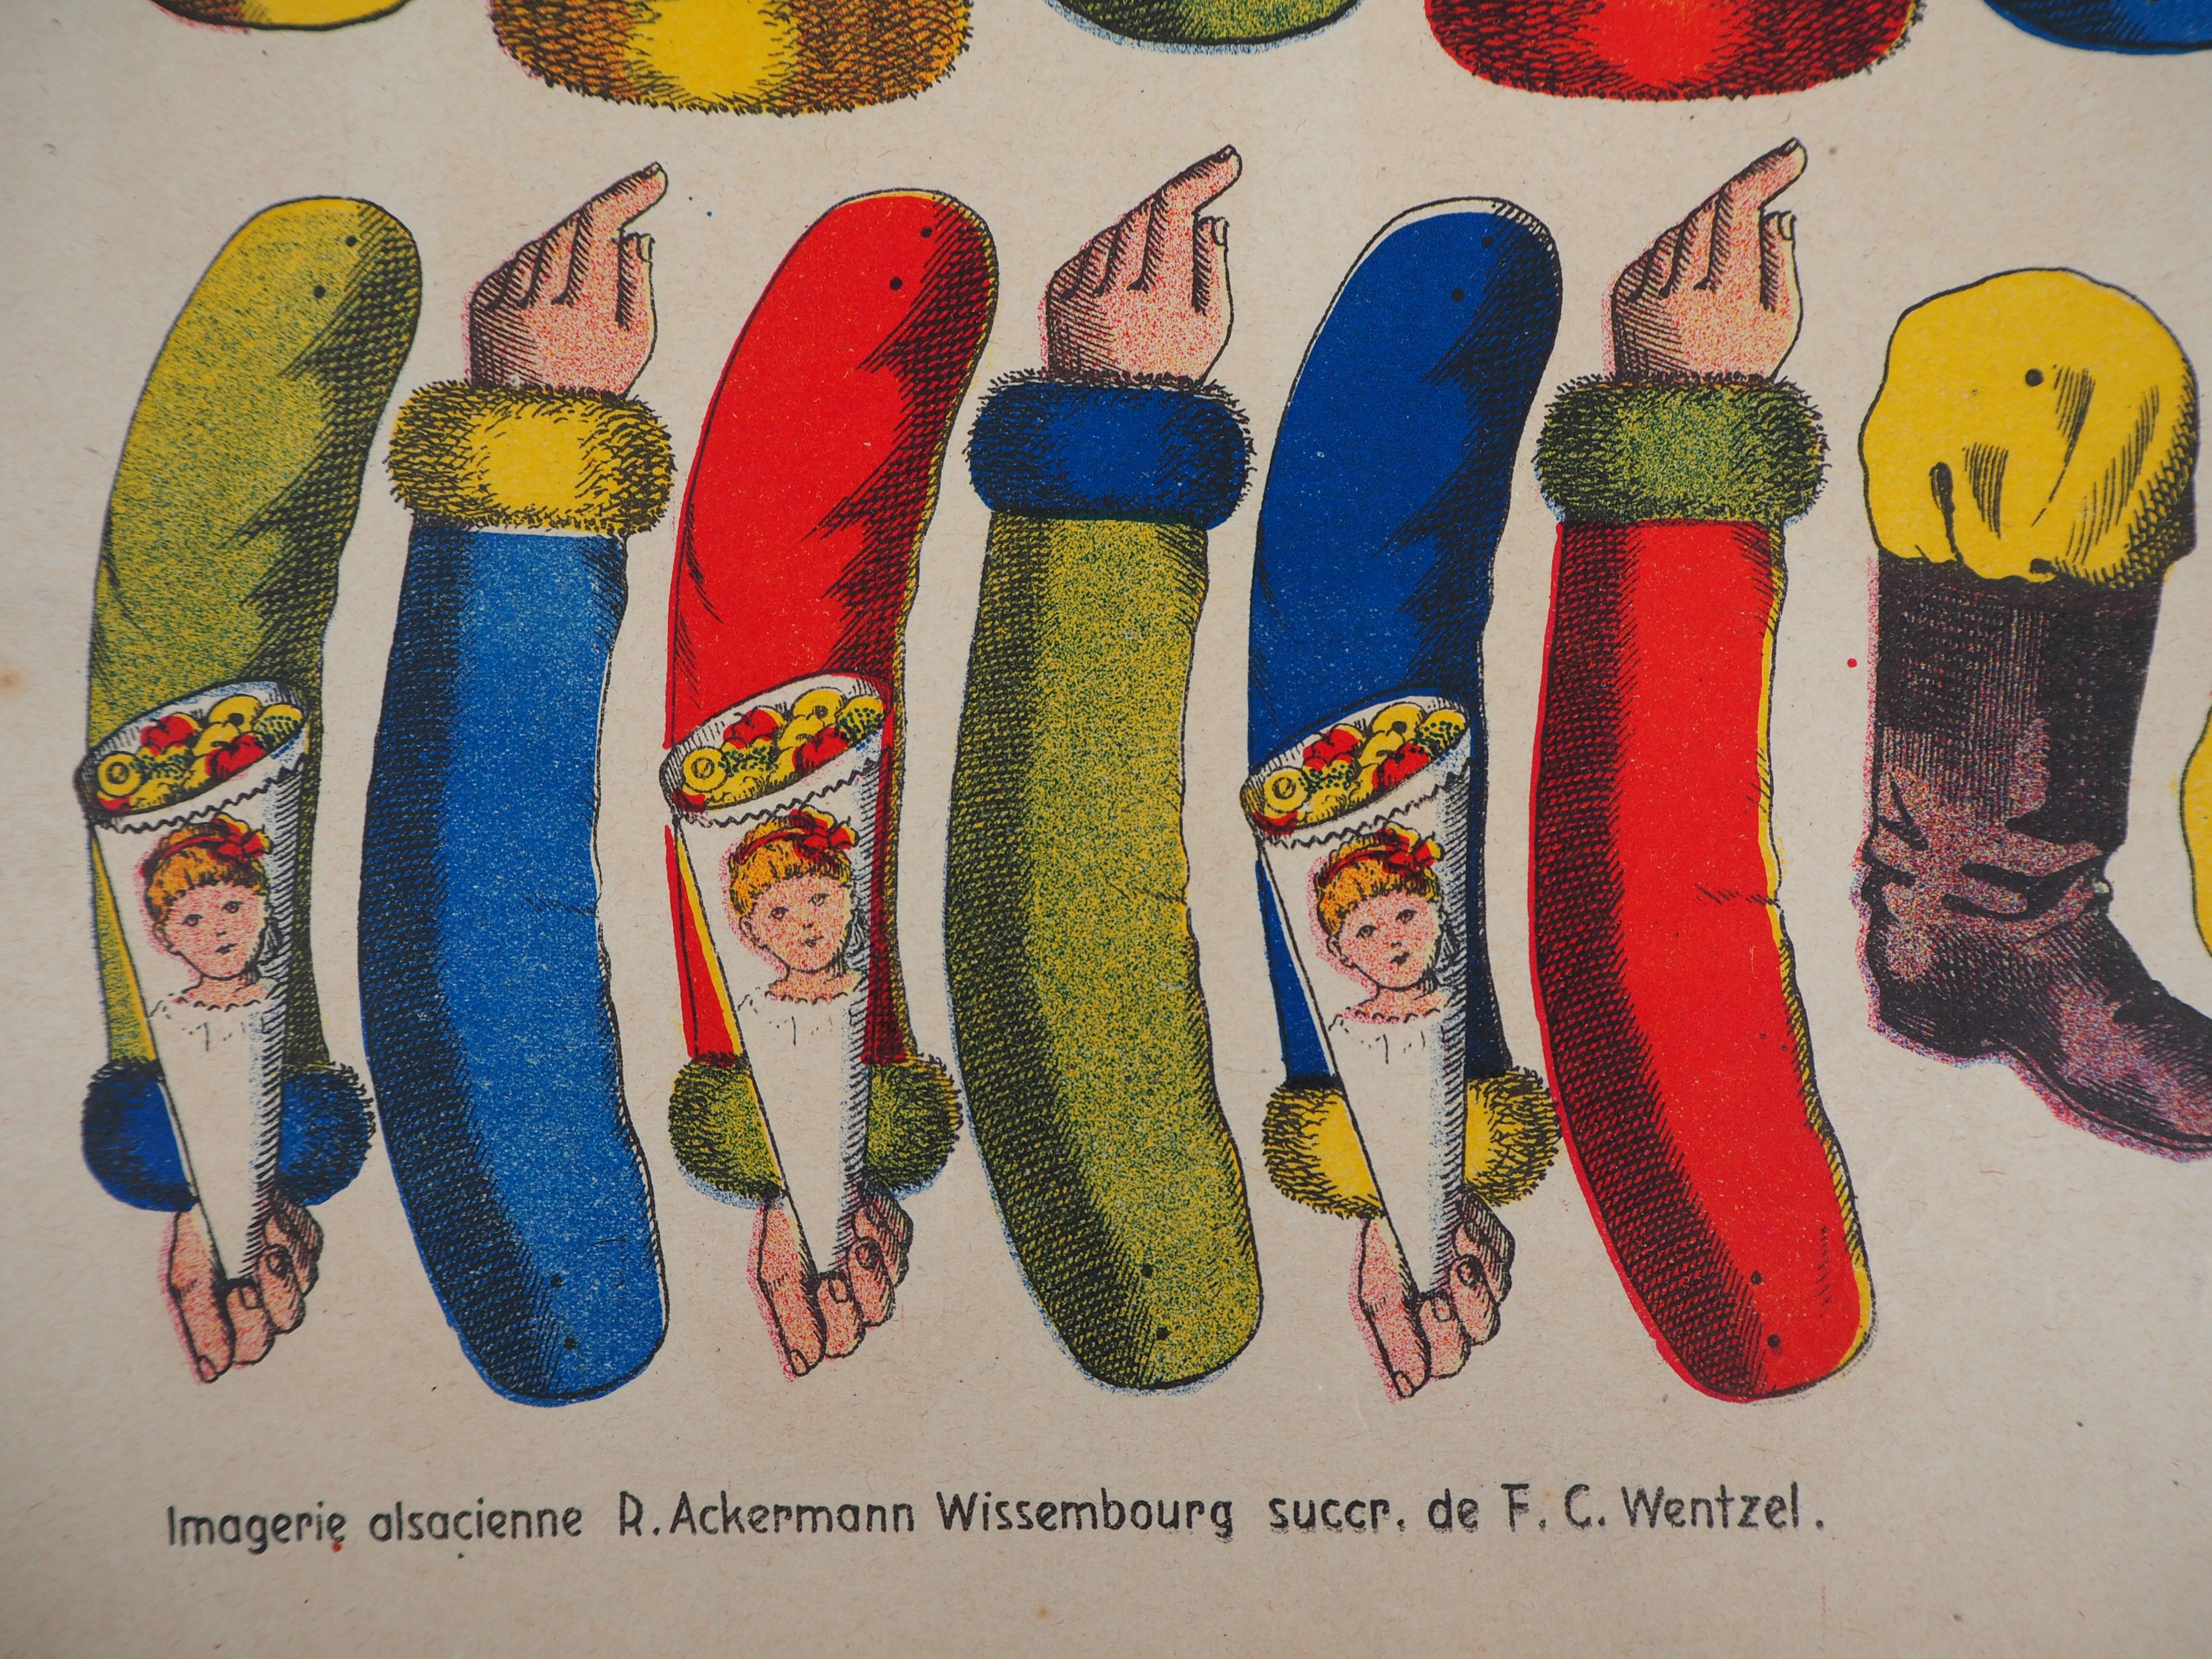 Imagerie de Wissembourg 
Weihnachtsmann, ca. 1906

Lithographie, Holzschnitt und Schablone
Zeichnung von C. Burckardt
Auf  papier 43 x 32,5 cm (ca. 17 x 13 Zoll)

INFORMATION : Imagerie de Wissembourg (gegründet 1837)  war im XIX. Jahrhundert einer